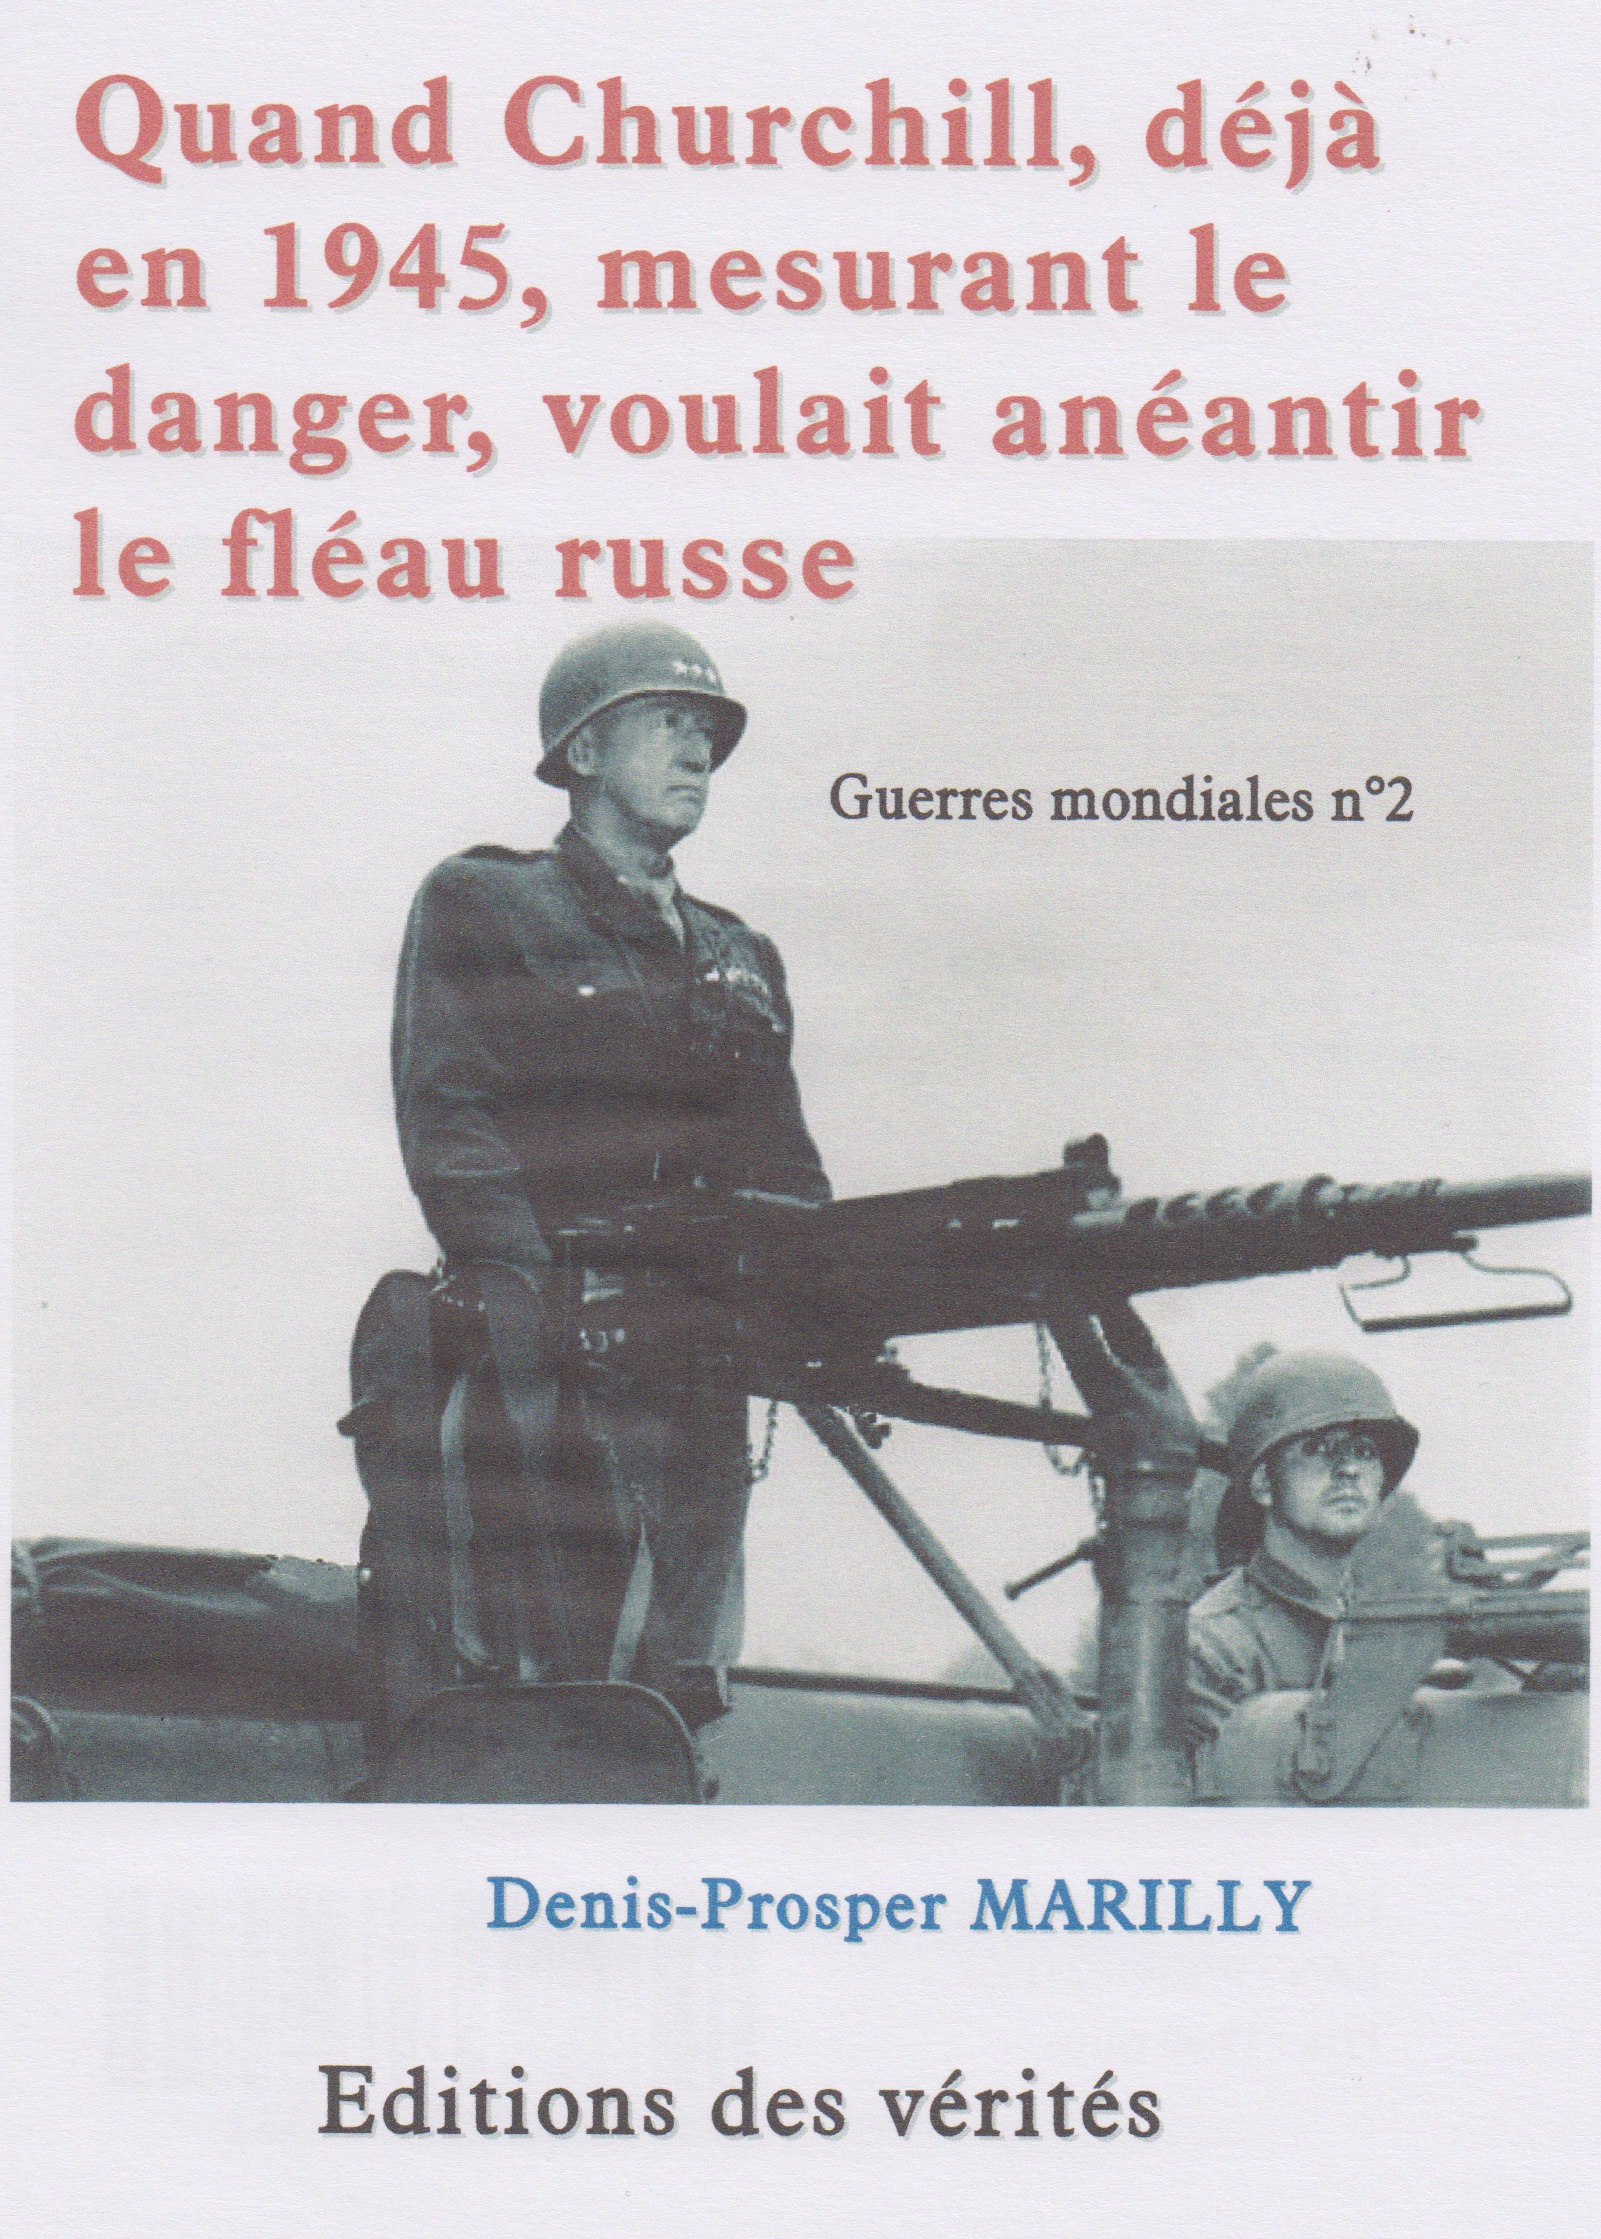 Quand Churchill, déjà en 1945, mesurant le danger, voulait anéantir le fléau russe - Denis-Prosper Marilly